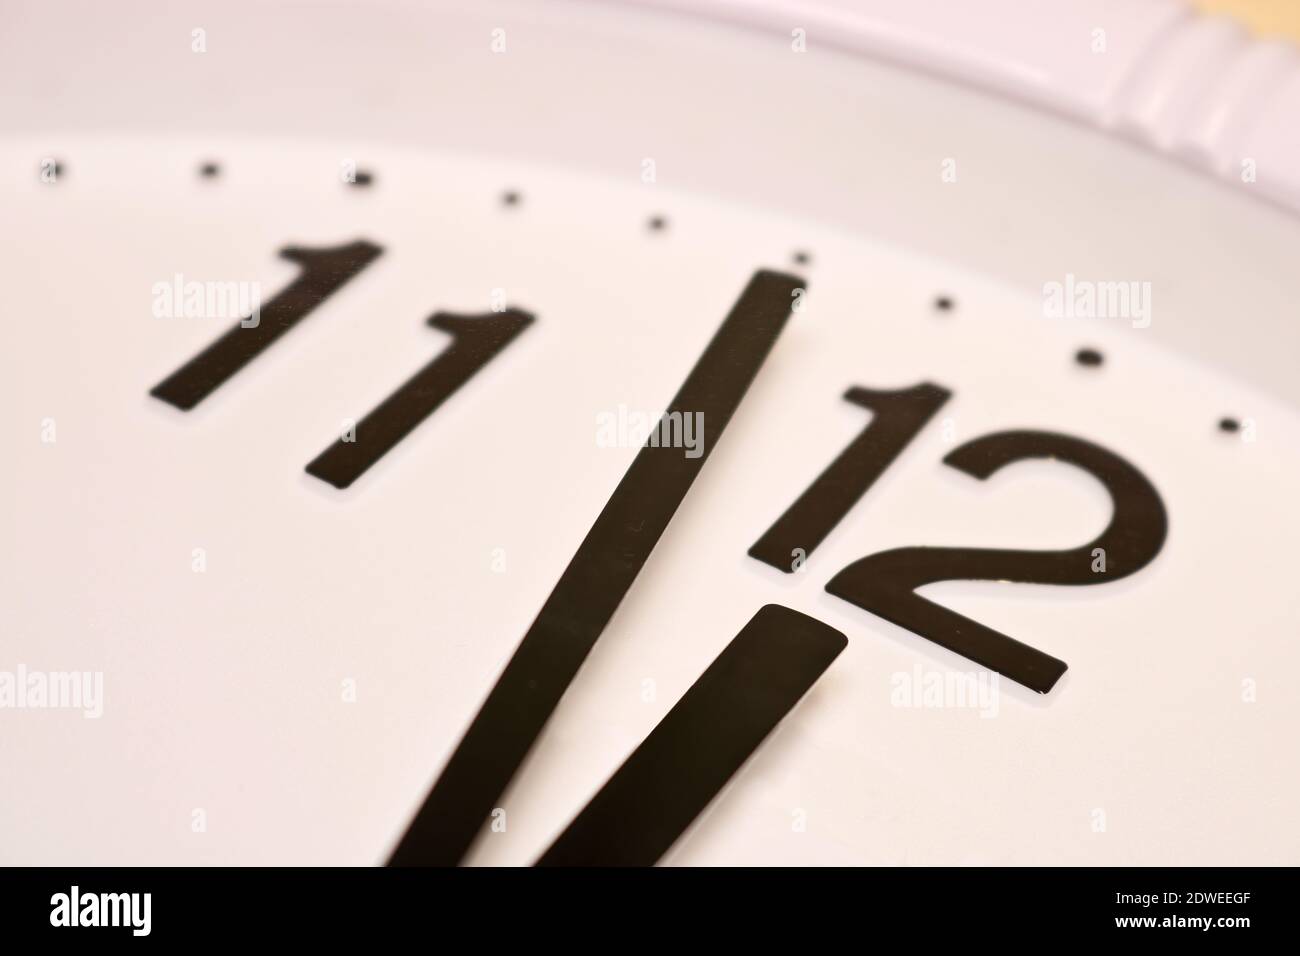 Zifferblatt einer analogen Uhr Nahaufnahme. Die Zeit ist 23:59 Uhr. Weißes  Zifferblatt, schwarze Ziffern. Sepia-getöntes Bild Stockfotografie - Alamy